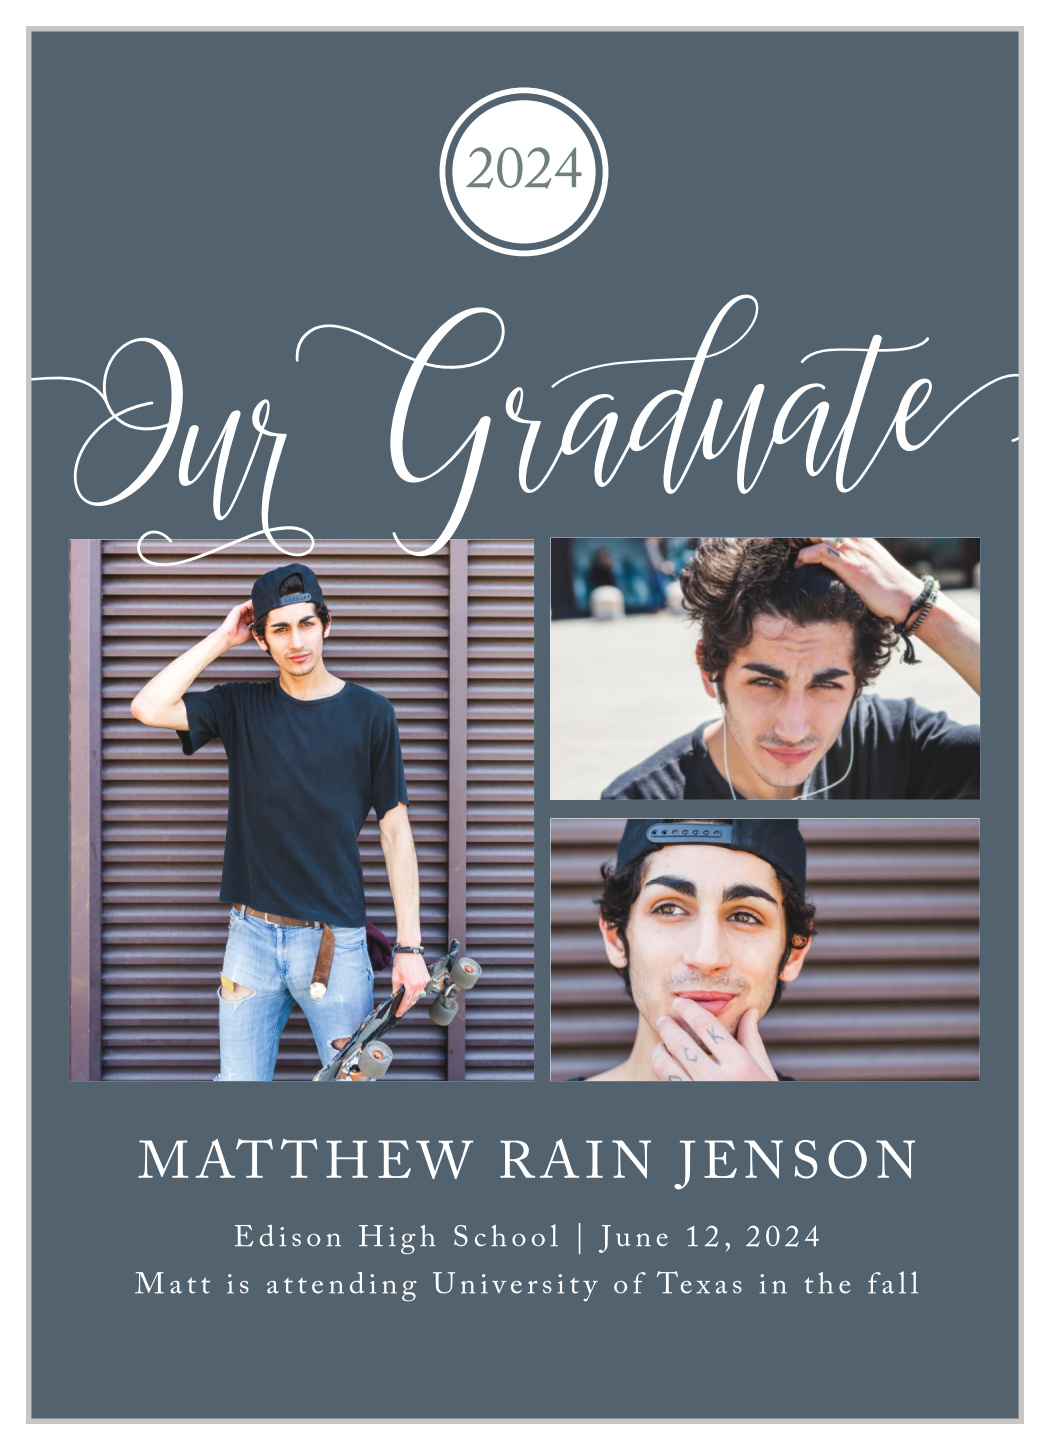 Our Grad Graduation Announcements